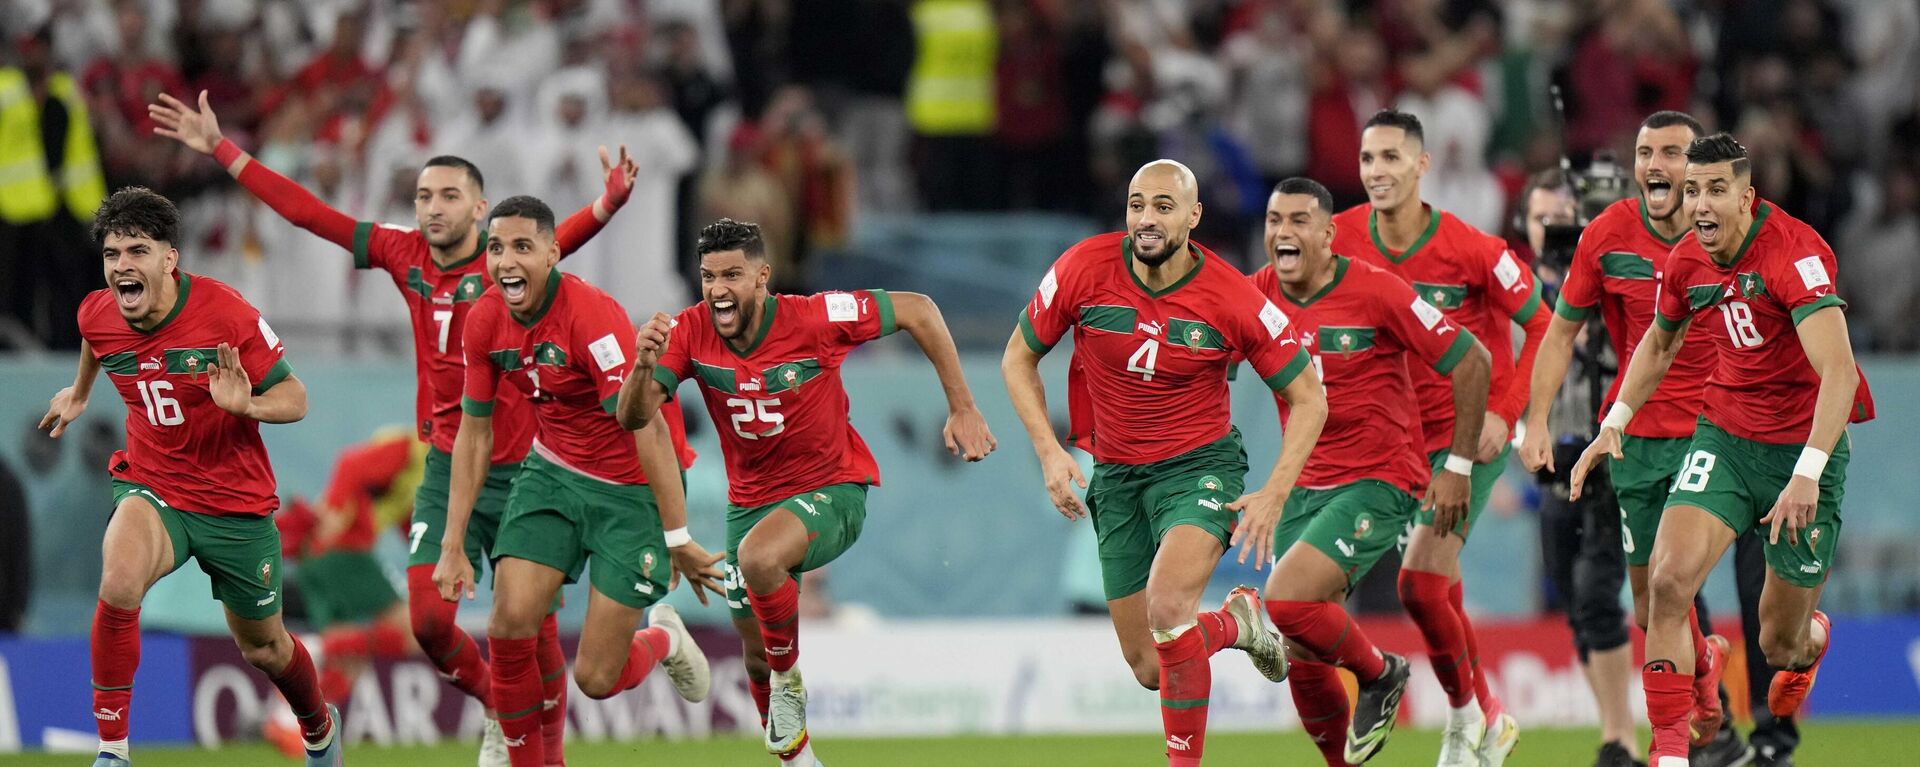 منتخب المغرب في كأس العالم 2022 بعد الفوز على نظيره الإسباني بركلات الترجيح - سبوتنيك عربي, 1920, 12.01.2023